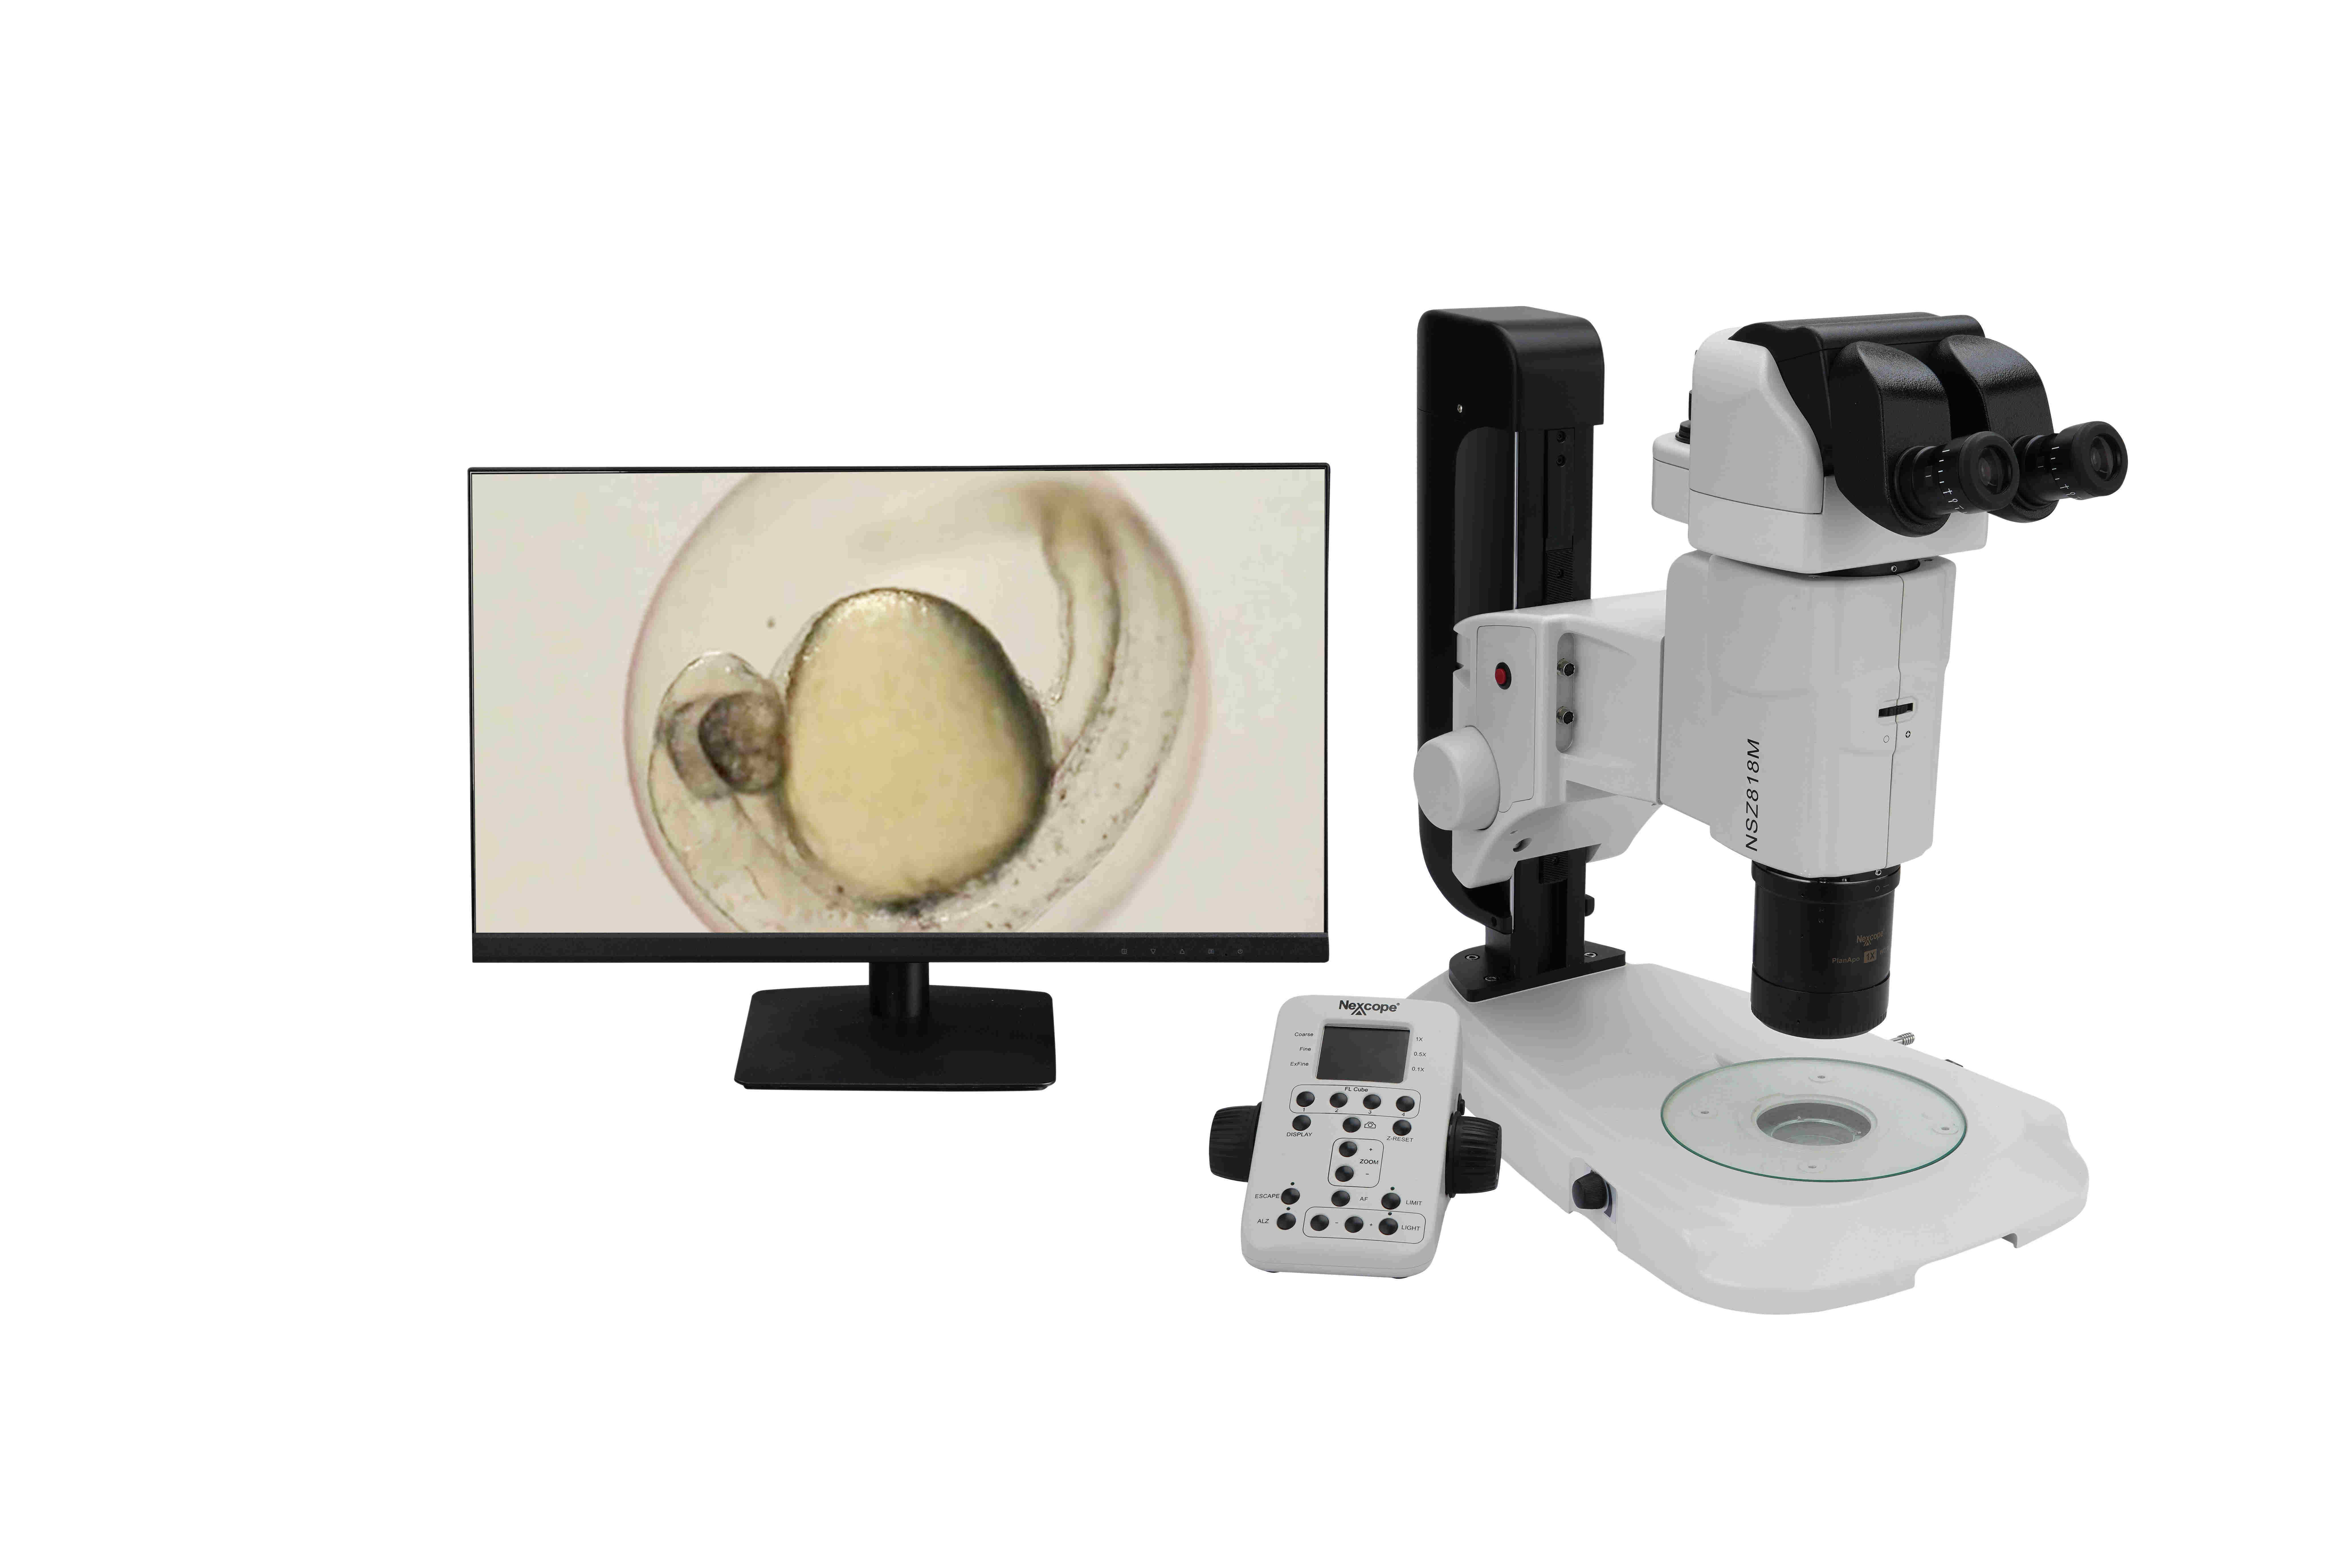 耐可视科研级复消色差平行光体视显微镜NSZ818